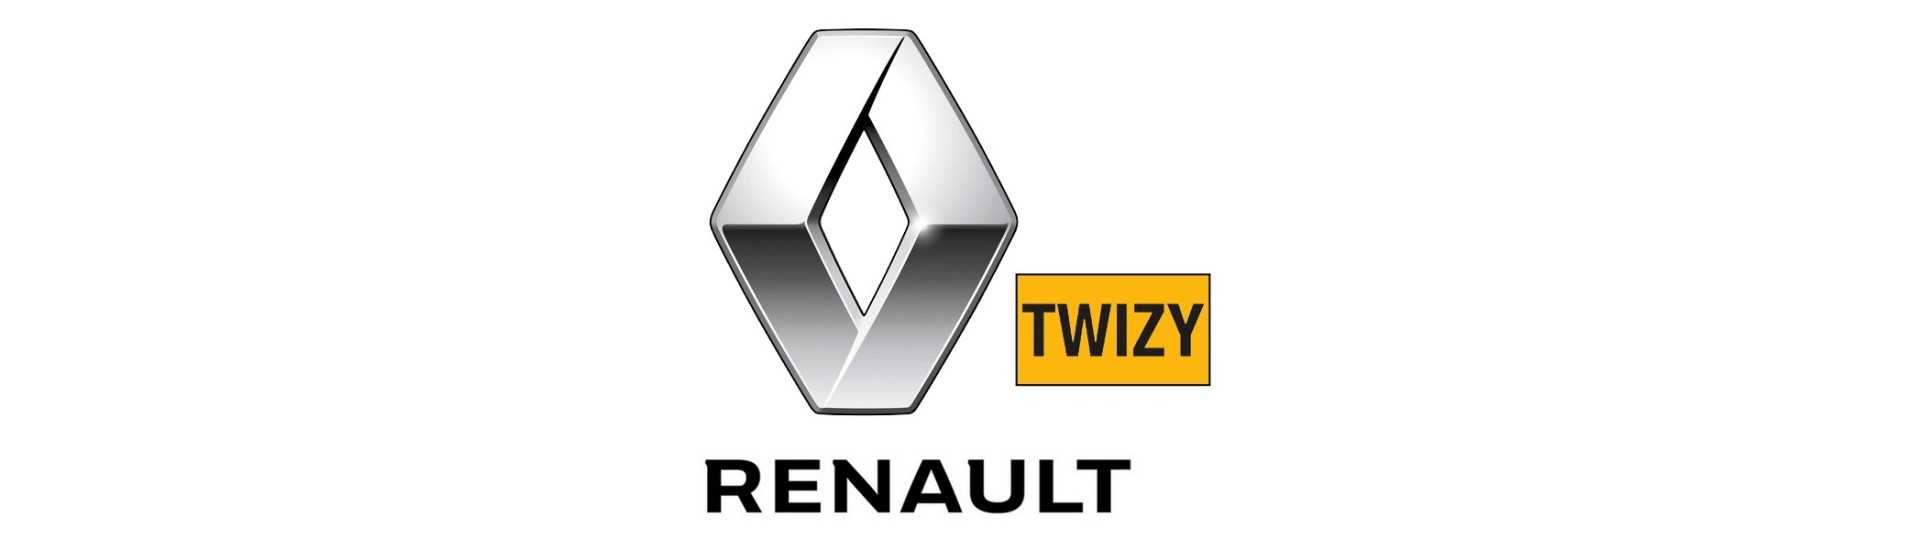 Stabilisierungsbar zum besten Preis für Auto ohne Lizenz Renault